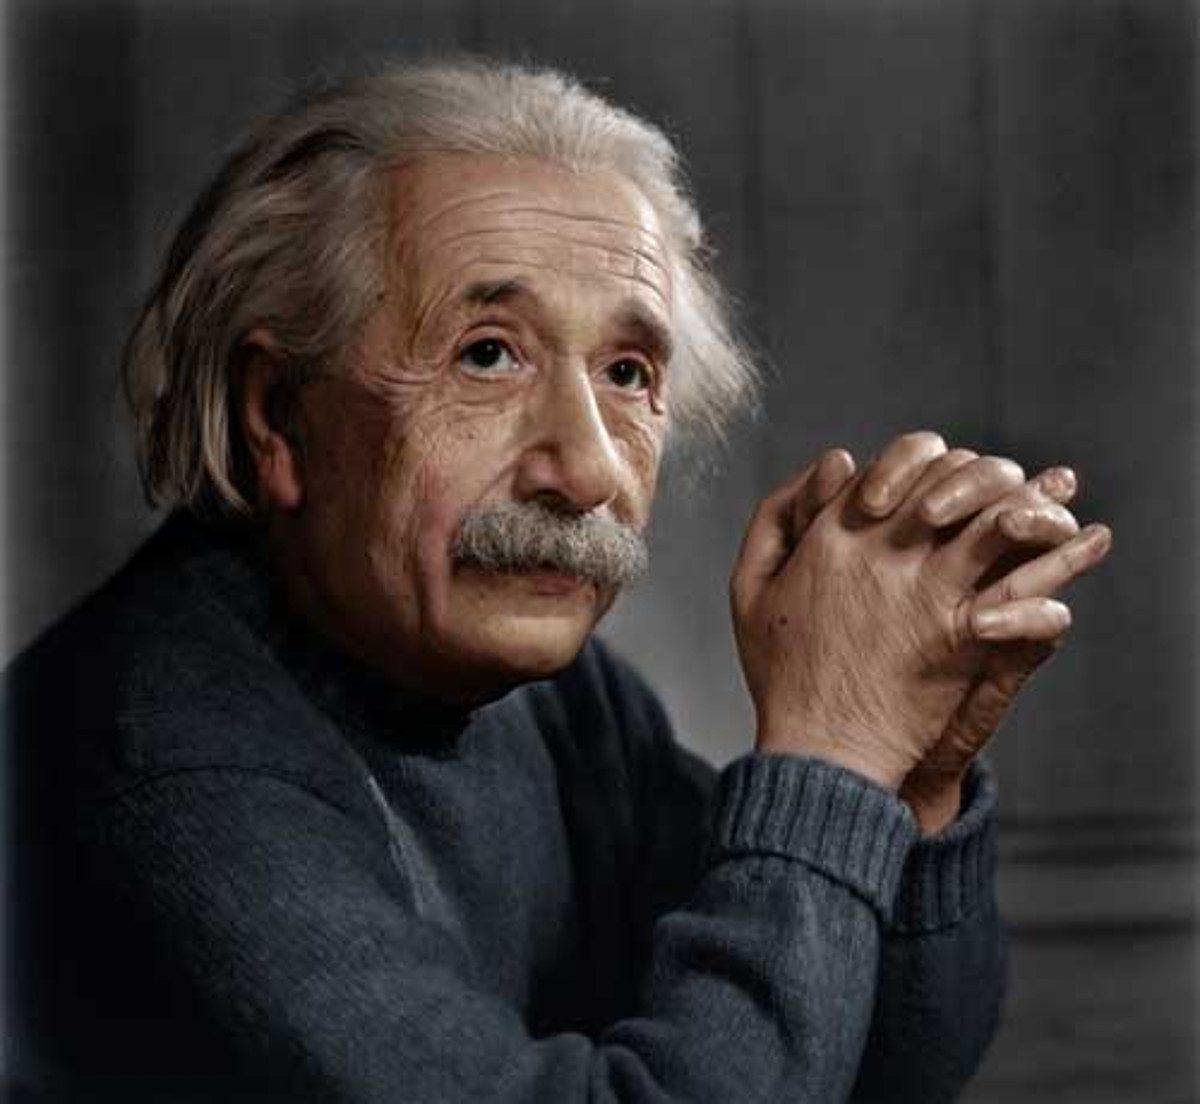 Albert Einstein - 14 March 1879 – 18 April 1955